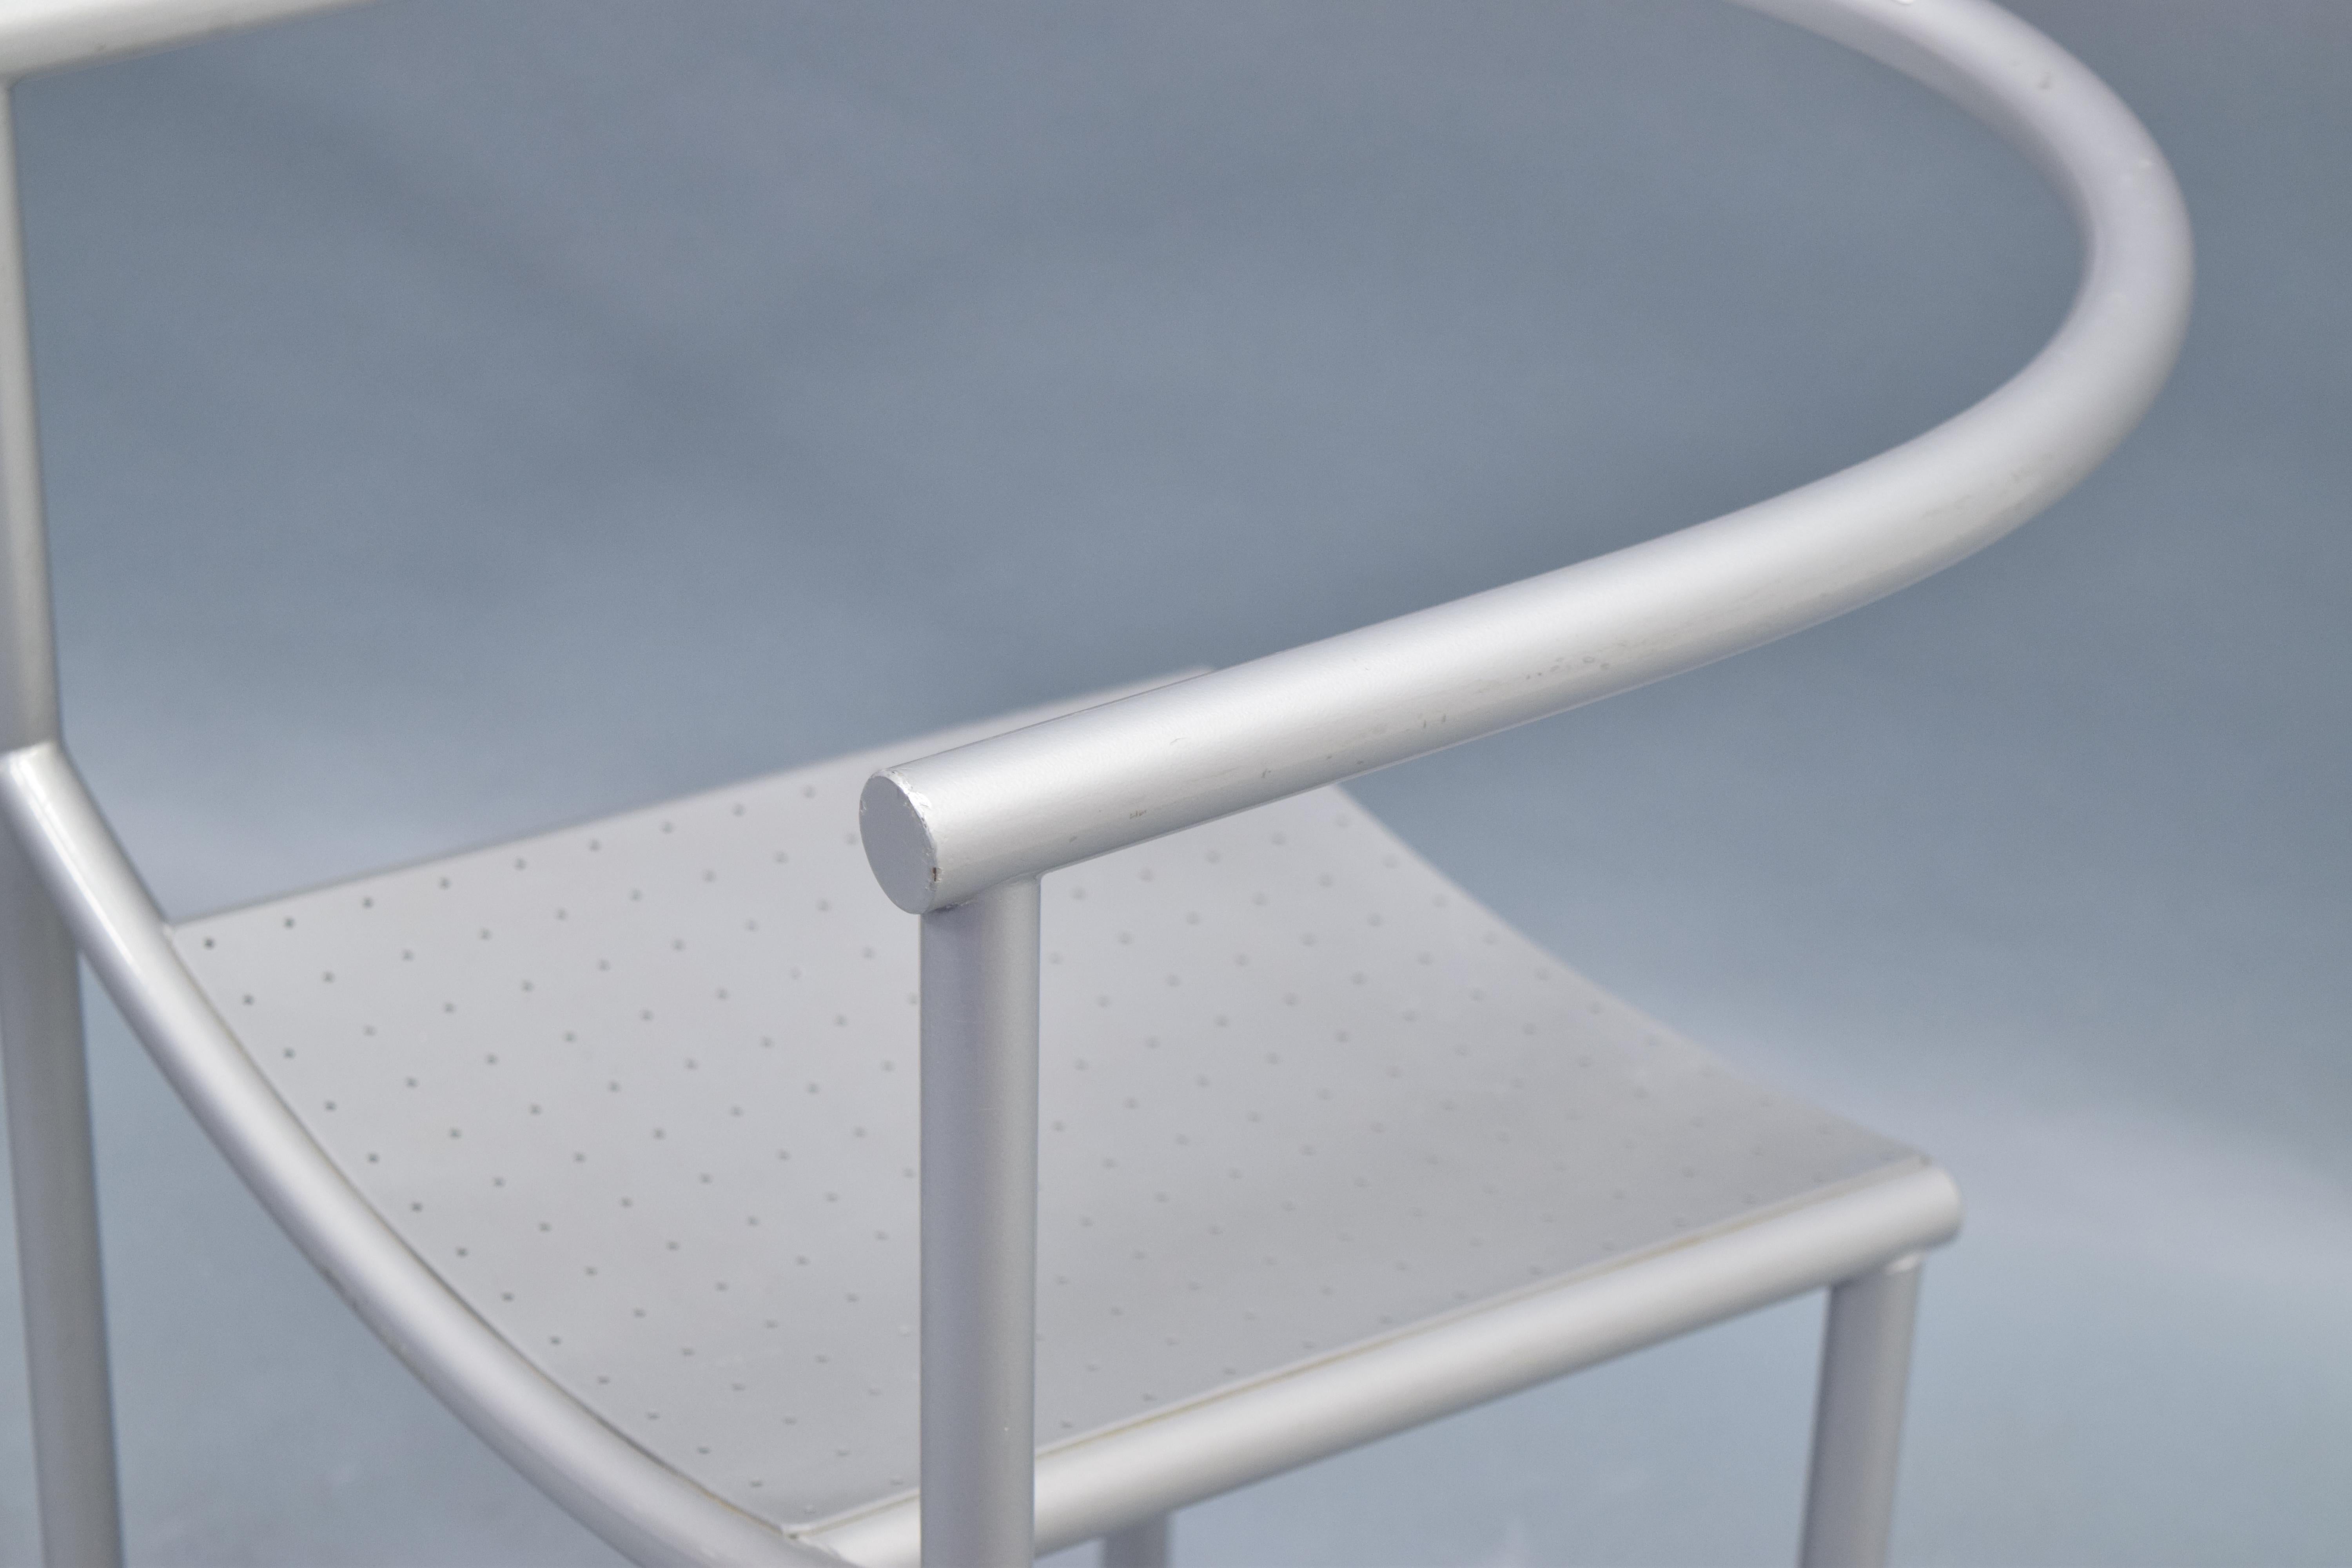 Unglaubliches Paar von Philipe Starck für Driade 'Von Vogelsang' Stühle, die ursprünglich für das Cafe Rothschild entworfen und hergestellt wurden. Struktur/Rahmen aus Stahlrohr, lackiert und pulverbeschichtet in einem kühlen Grauton. Runde